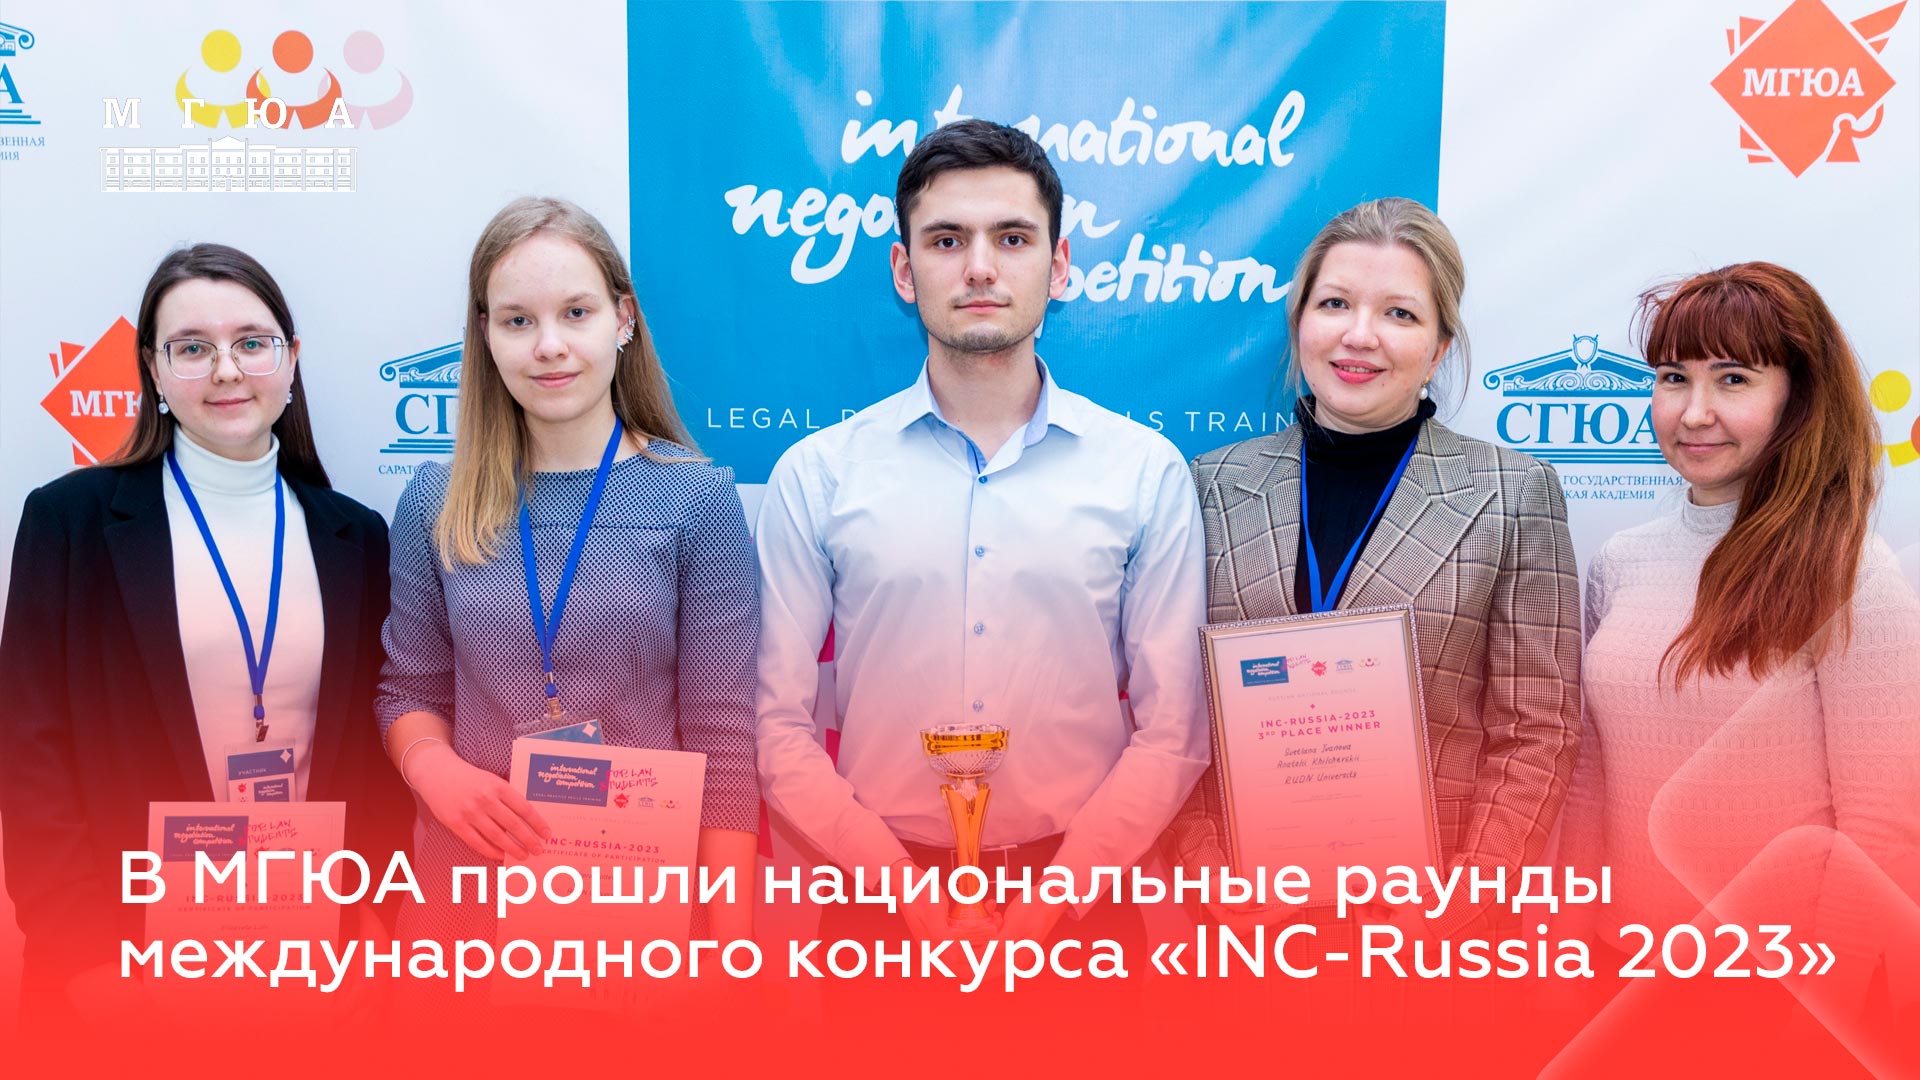 В МГЮА состоялся национальный раунд международного конкурса INC-Russia 2023